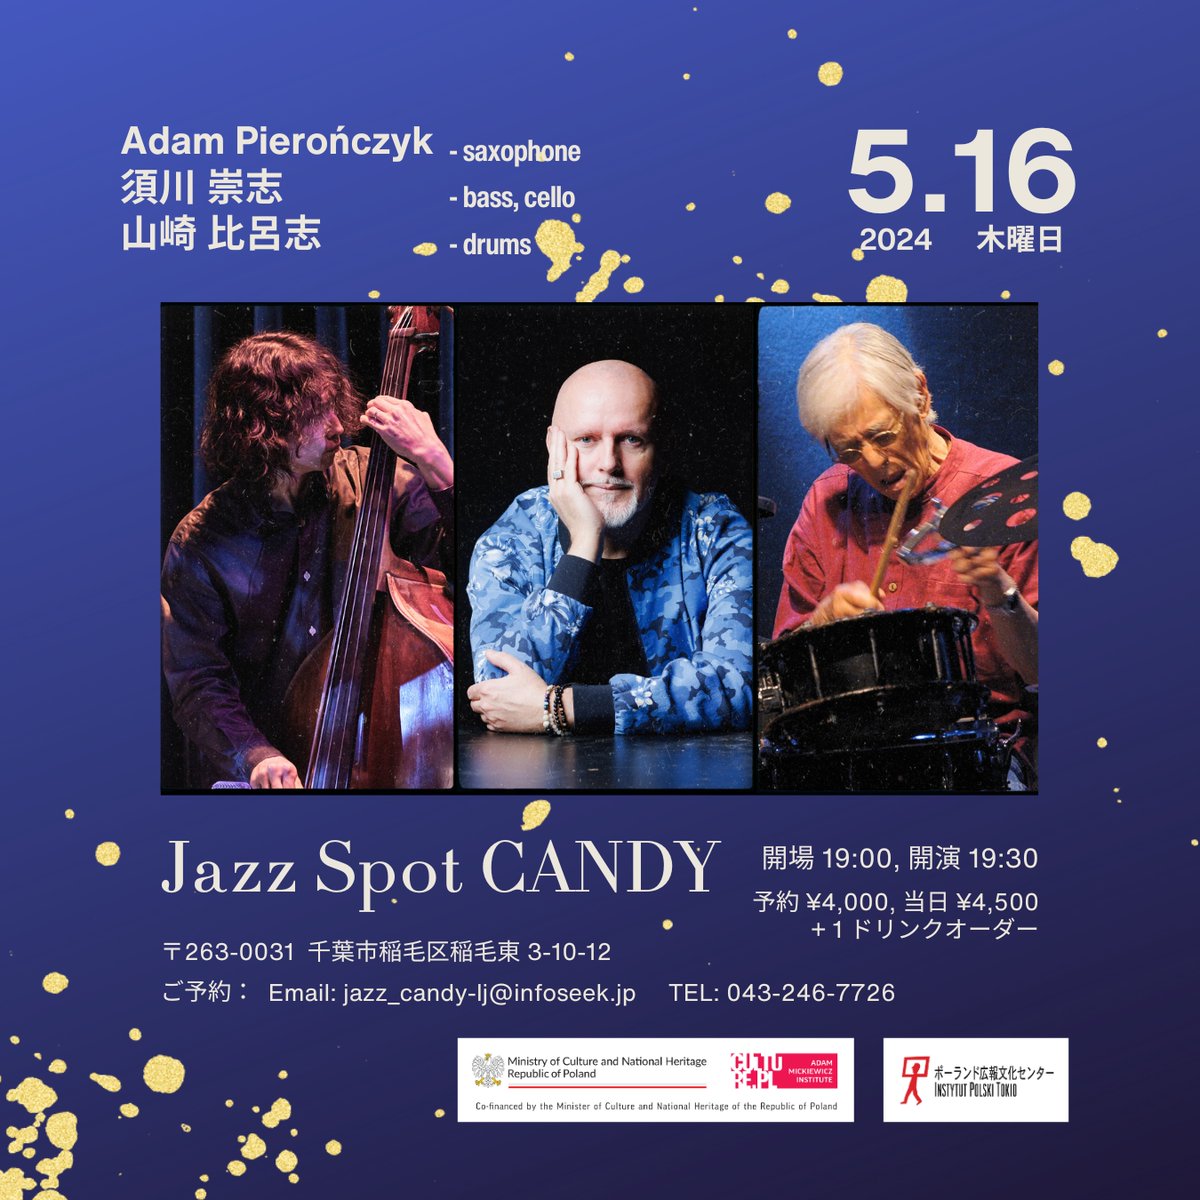 5月16日（水）19:30~
千葉市稲毛 Jazz Spot CANDY

Adam Pieronczyk (sax) - from Poland
須川崇志 (bass, cello)
山崎比呂志 (drums)

20席限定！
#freejazz #improvisedmusic